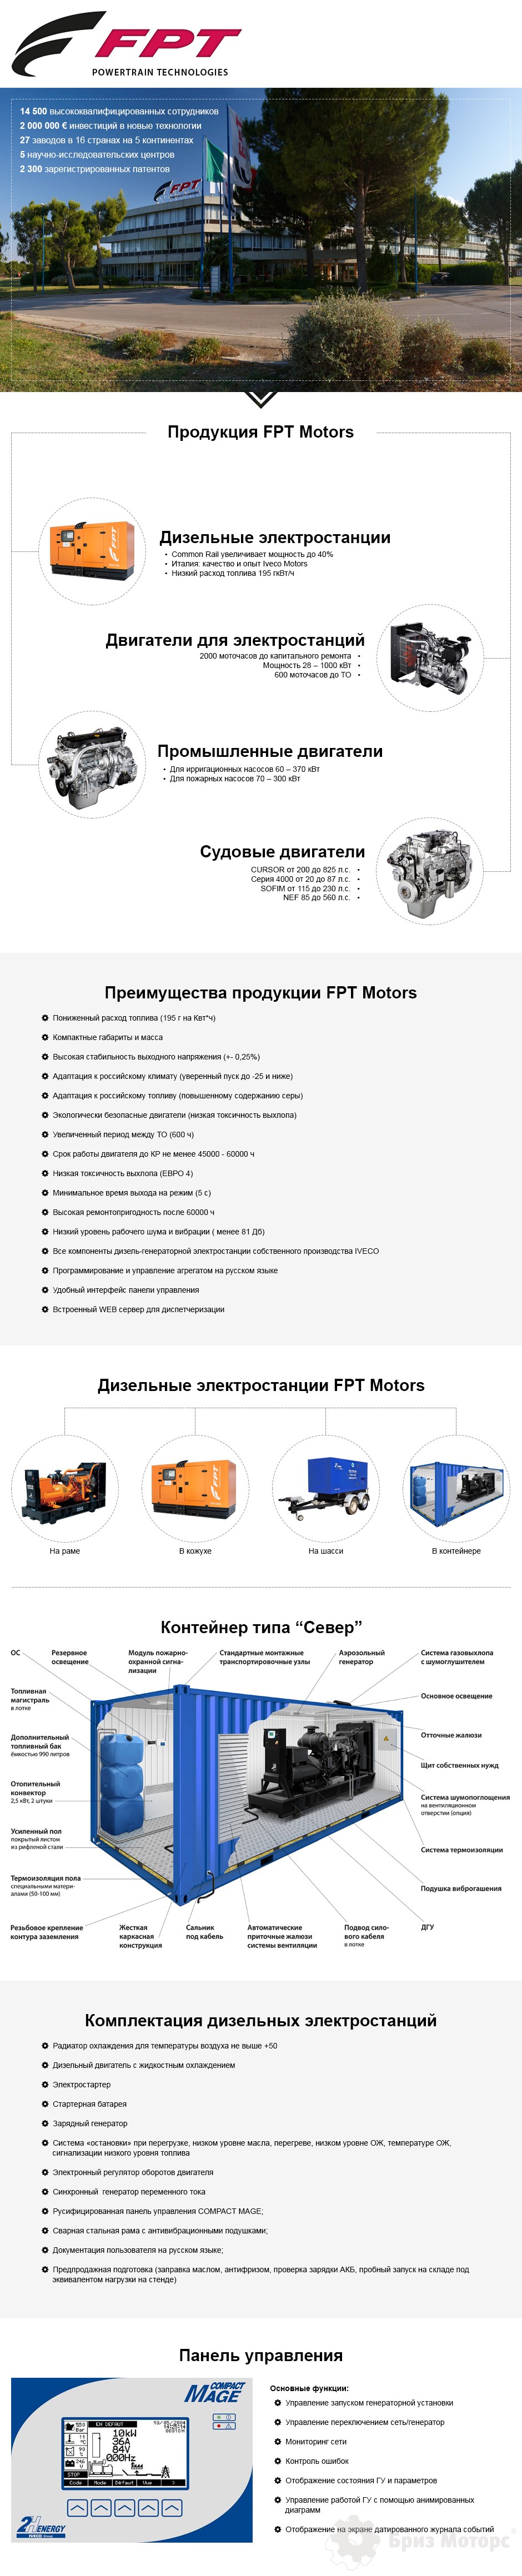 Инфографика - Дизель-генераторы Iveco / FPT